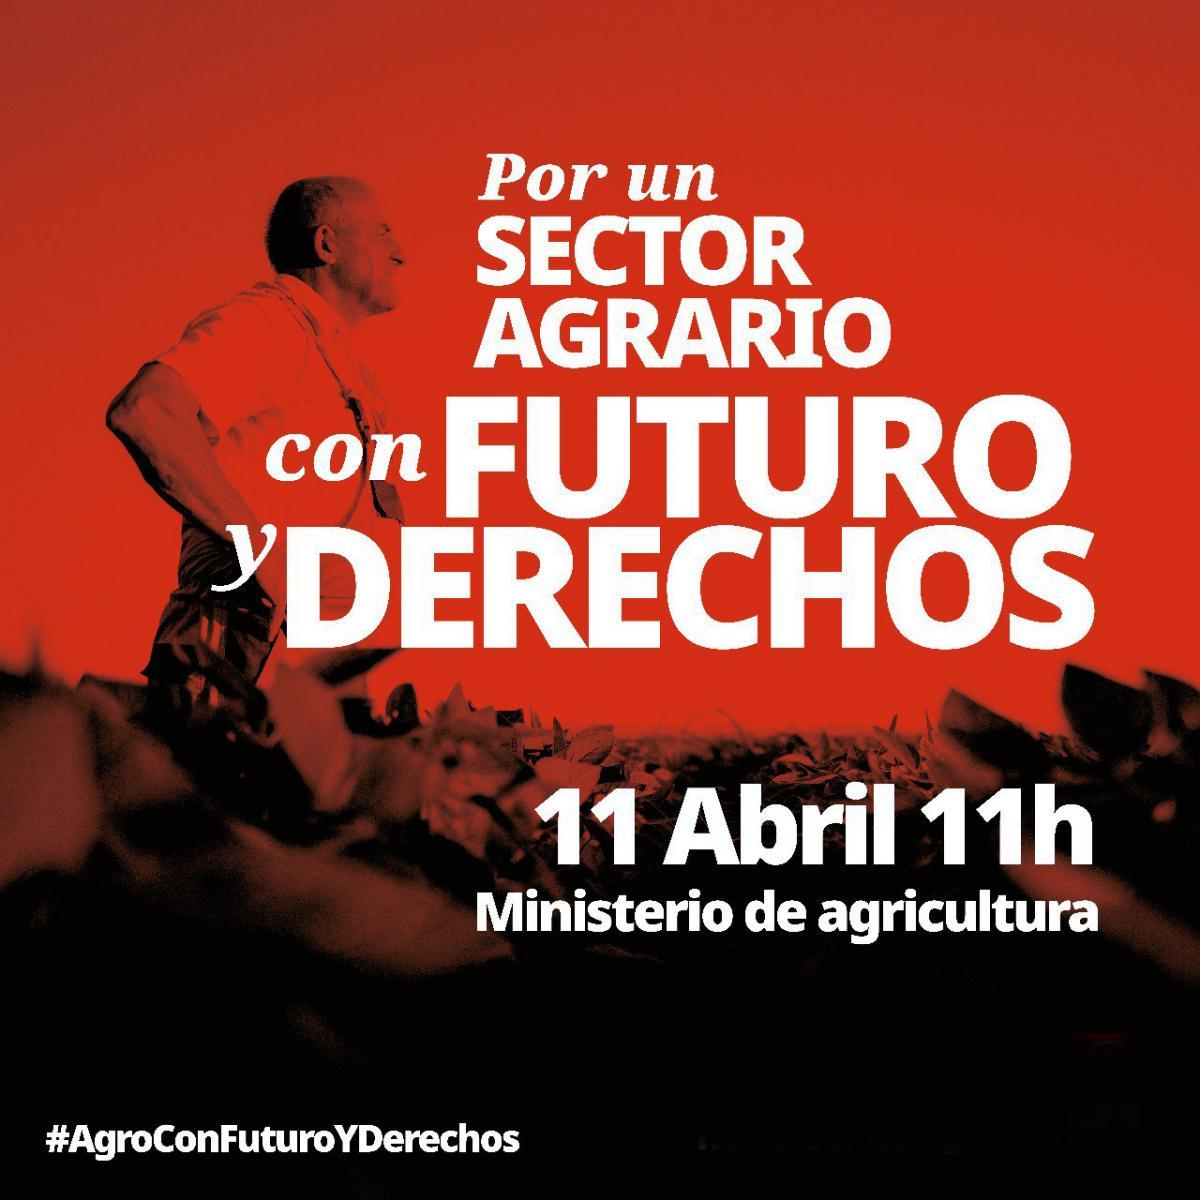 El Pas Valenci fletar 4 autobuses de delegados y delegadas del sector agrario y de otros sectores.